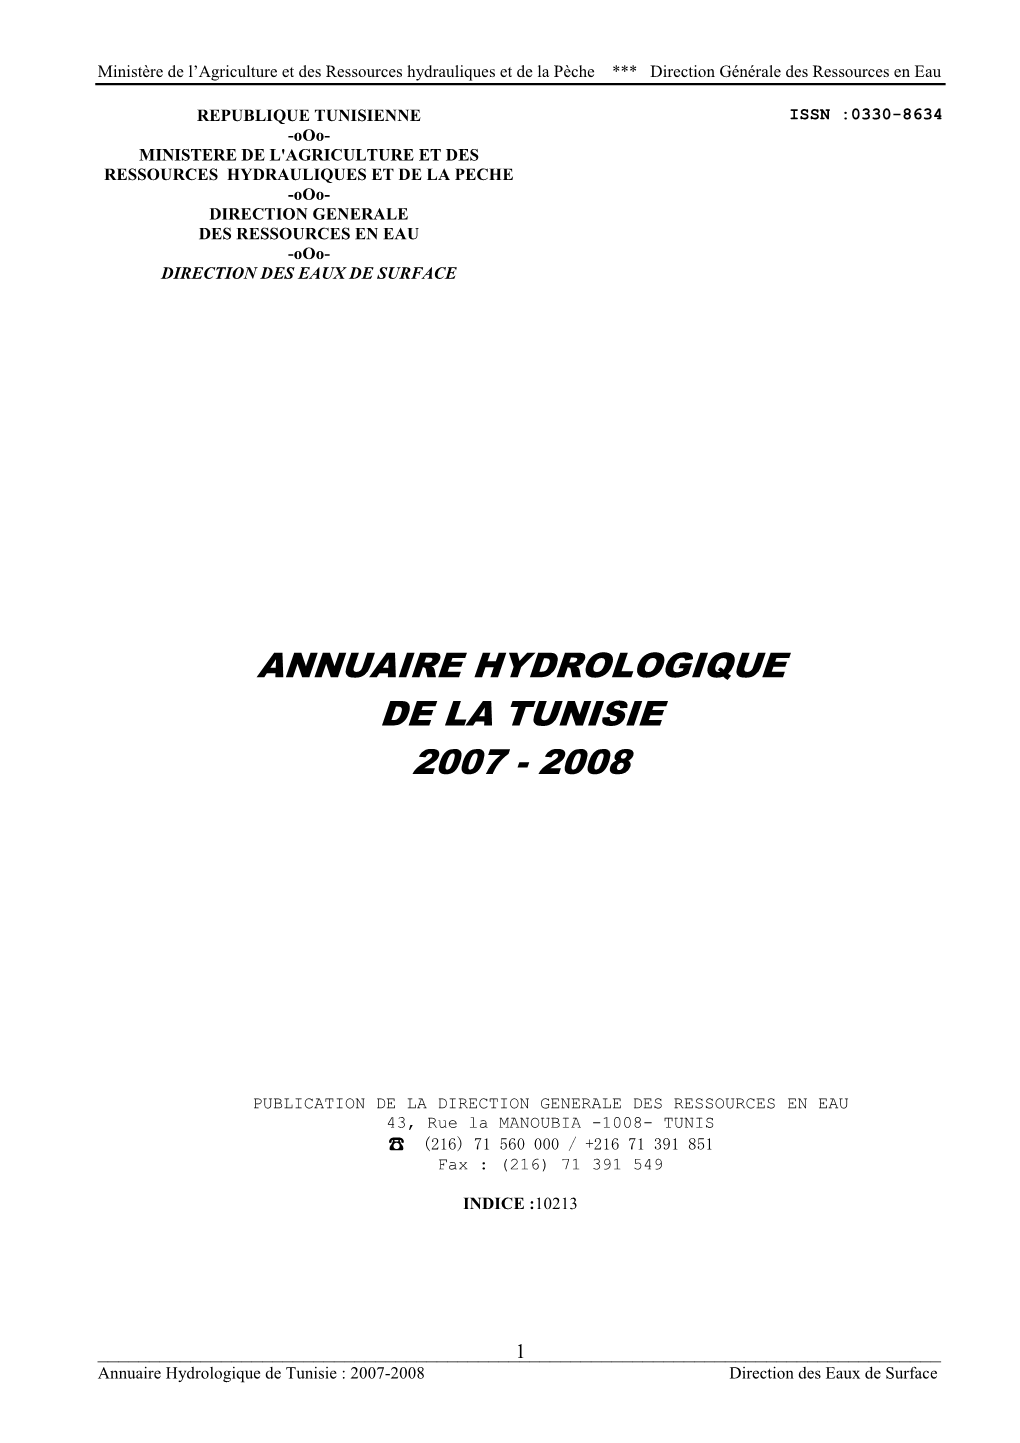 Annuaire Hydrologique De La Tunisie 2007 - 2008